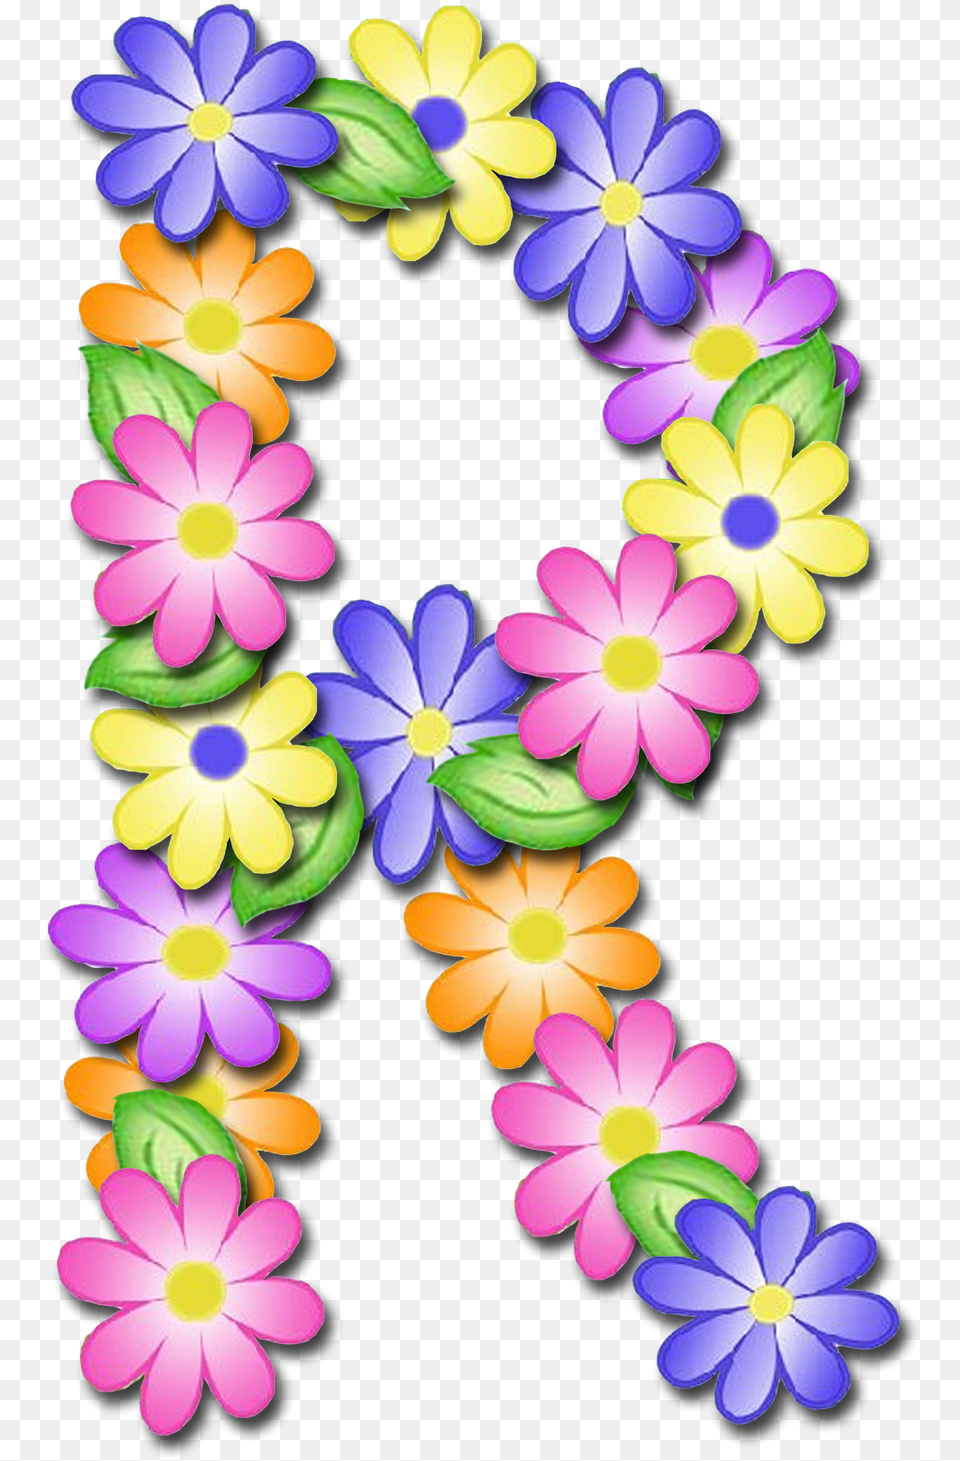 Alfabeto De Primavera Letras Letras De Flores P, Accessories, Flower, Flower Arrangement, Ornament Free Transparent Png